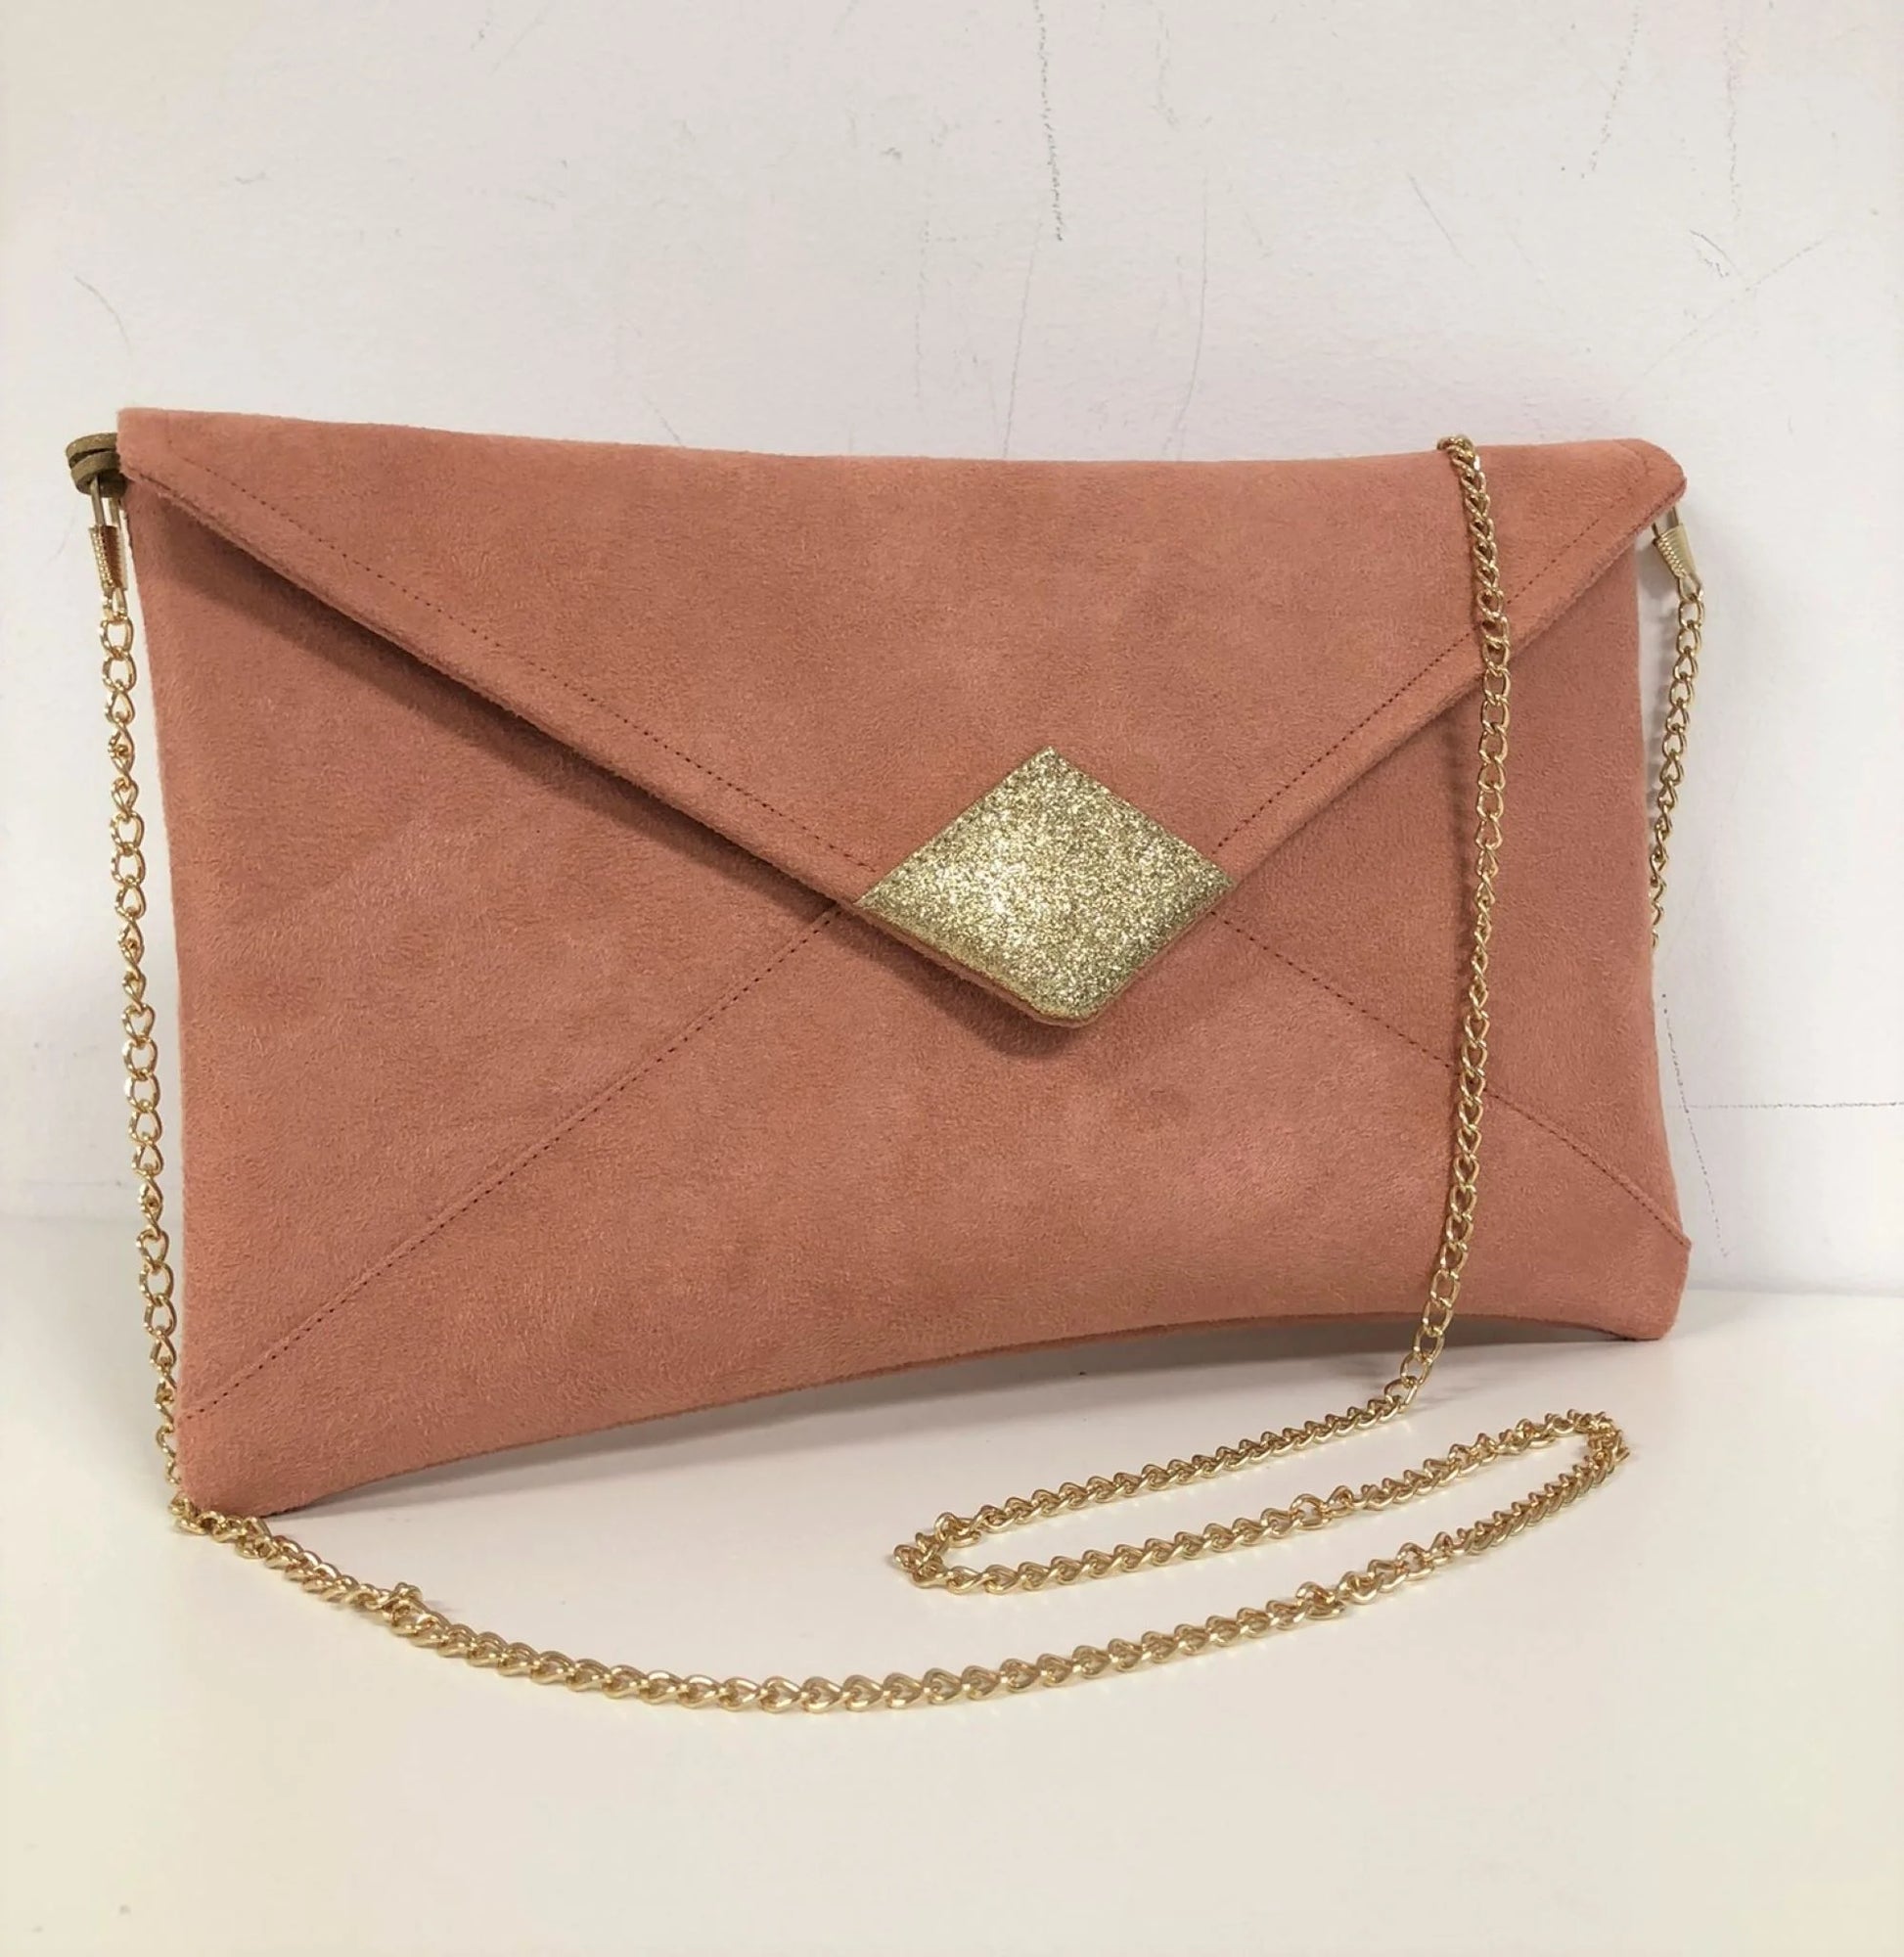 Le sac pochette Isa rose saumon à paillettes dorées, avec chainette amovible.